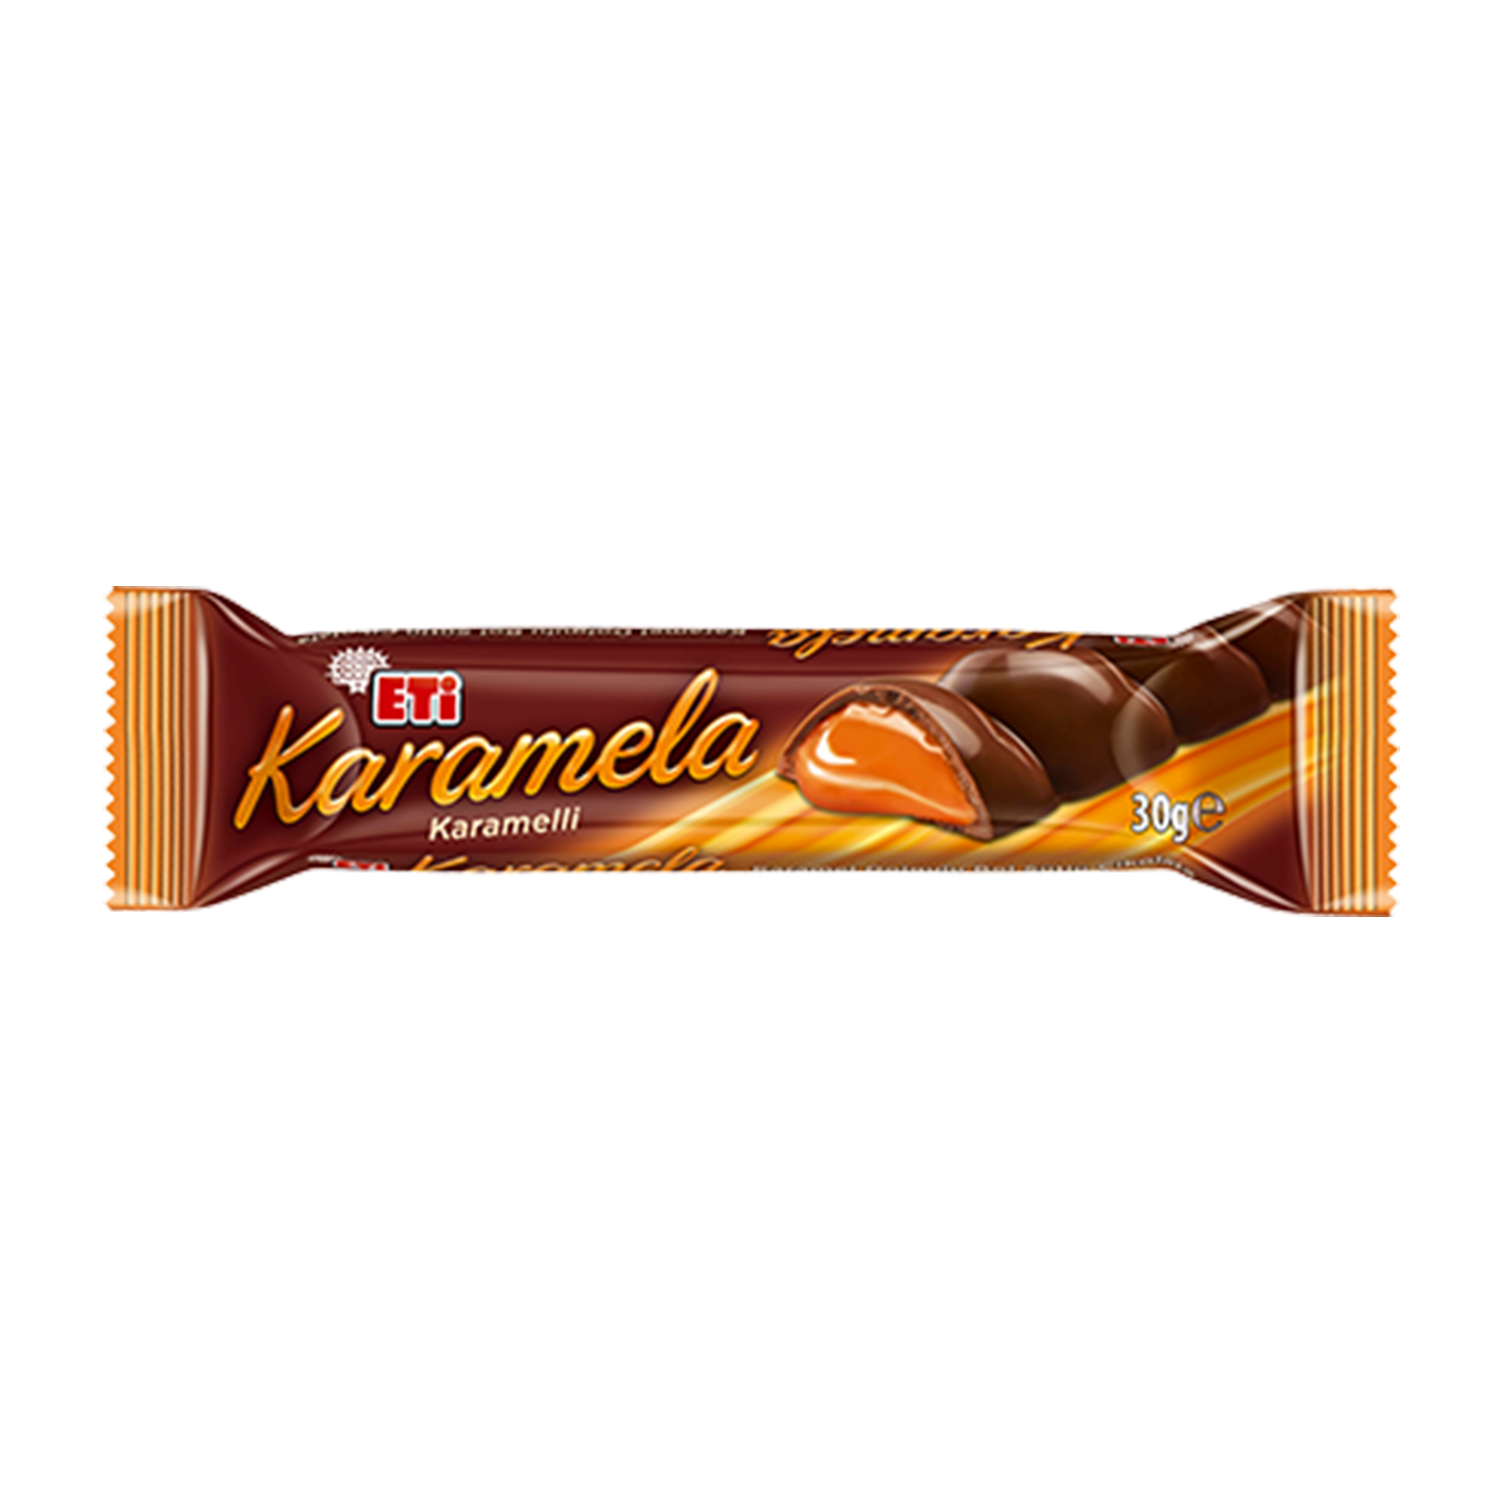 Eti Karamela Karamelli Çikolata 30 GR